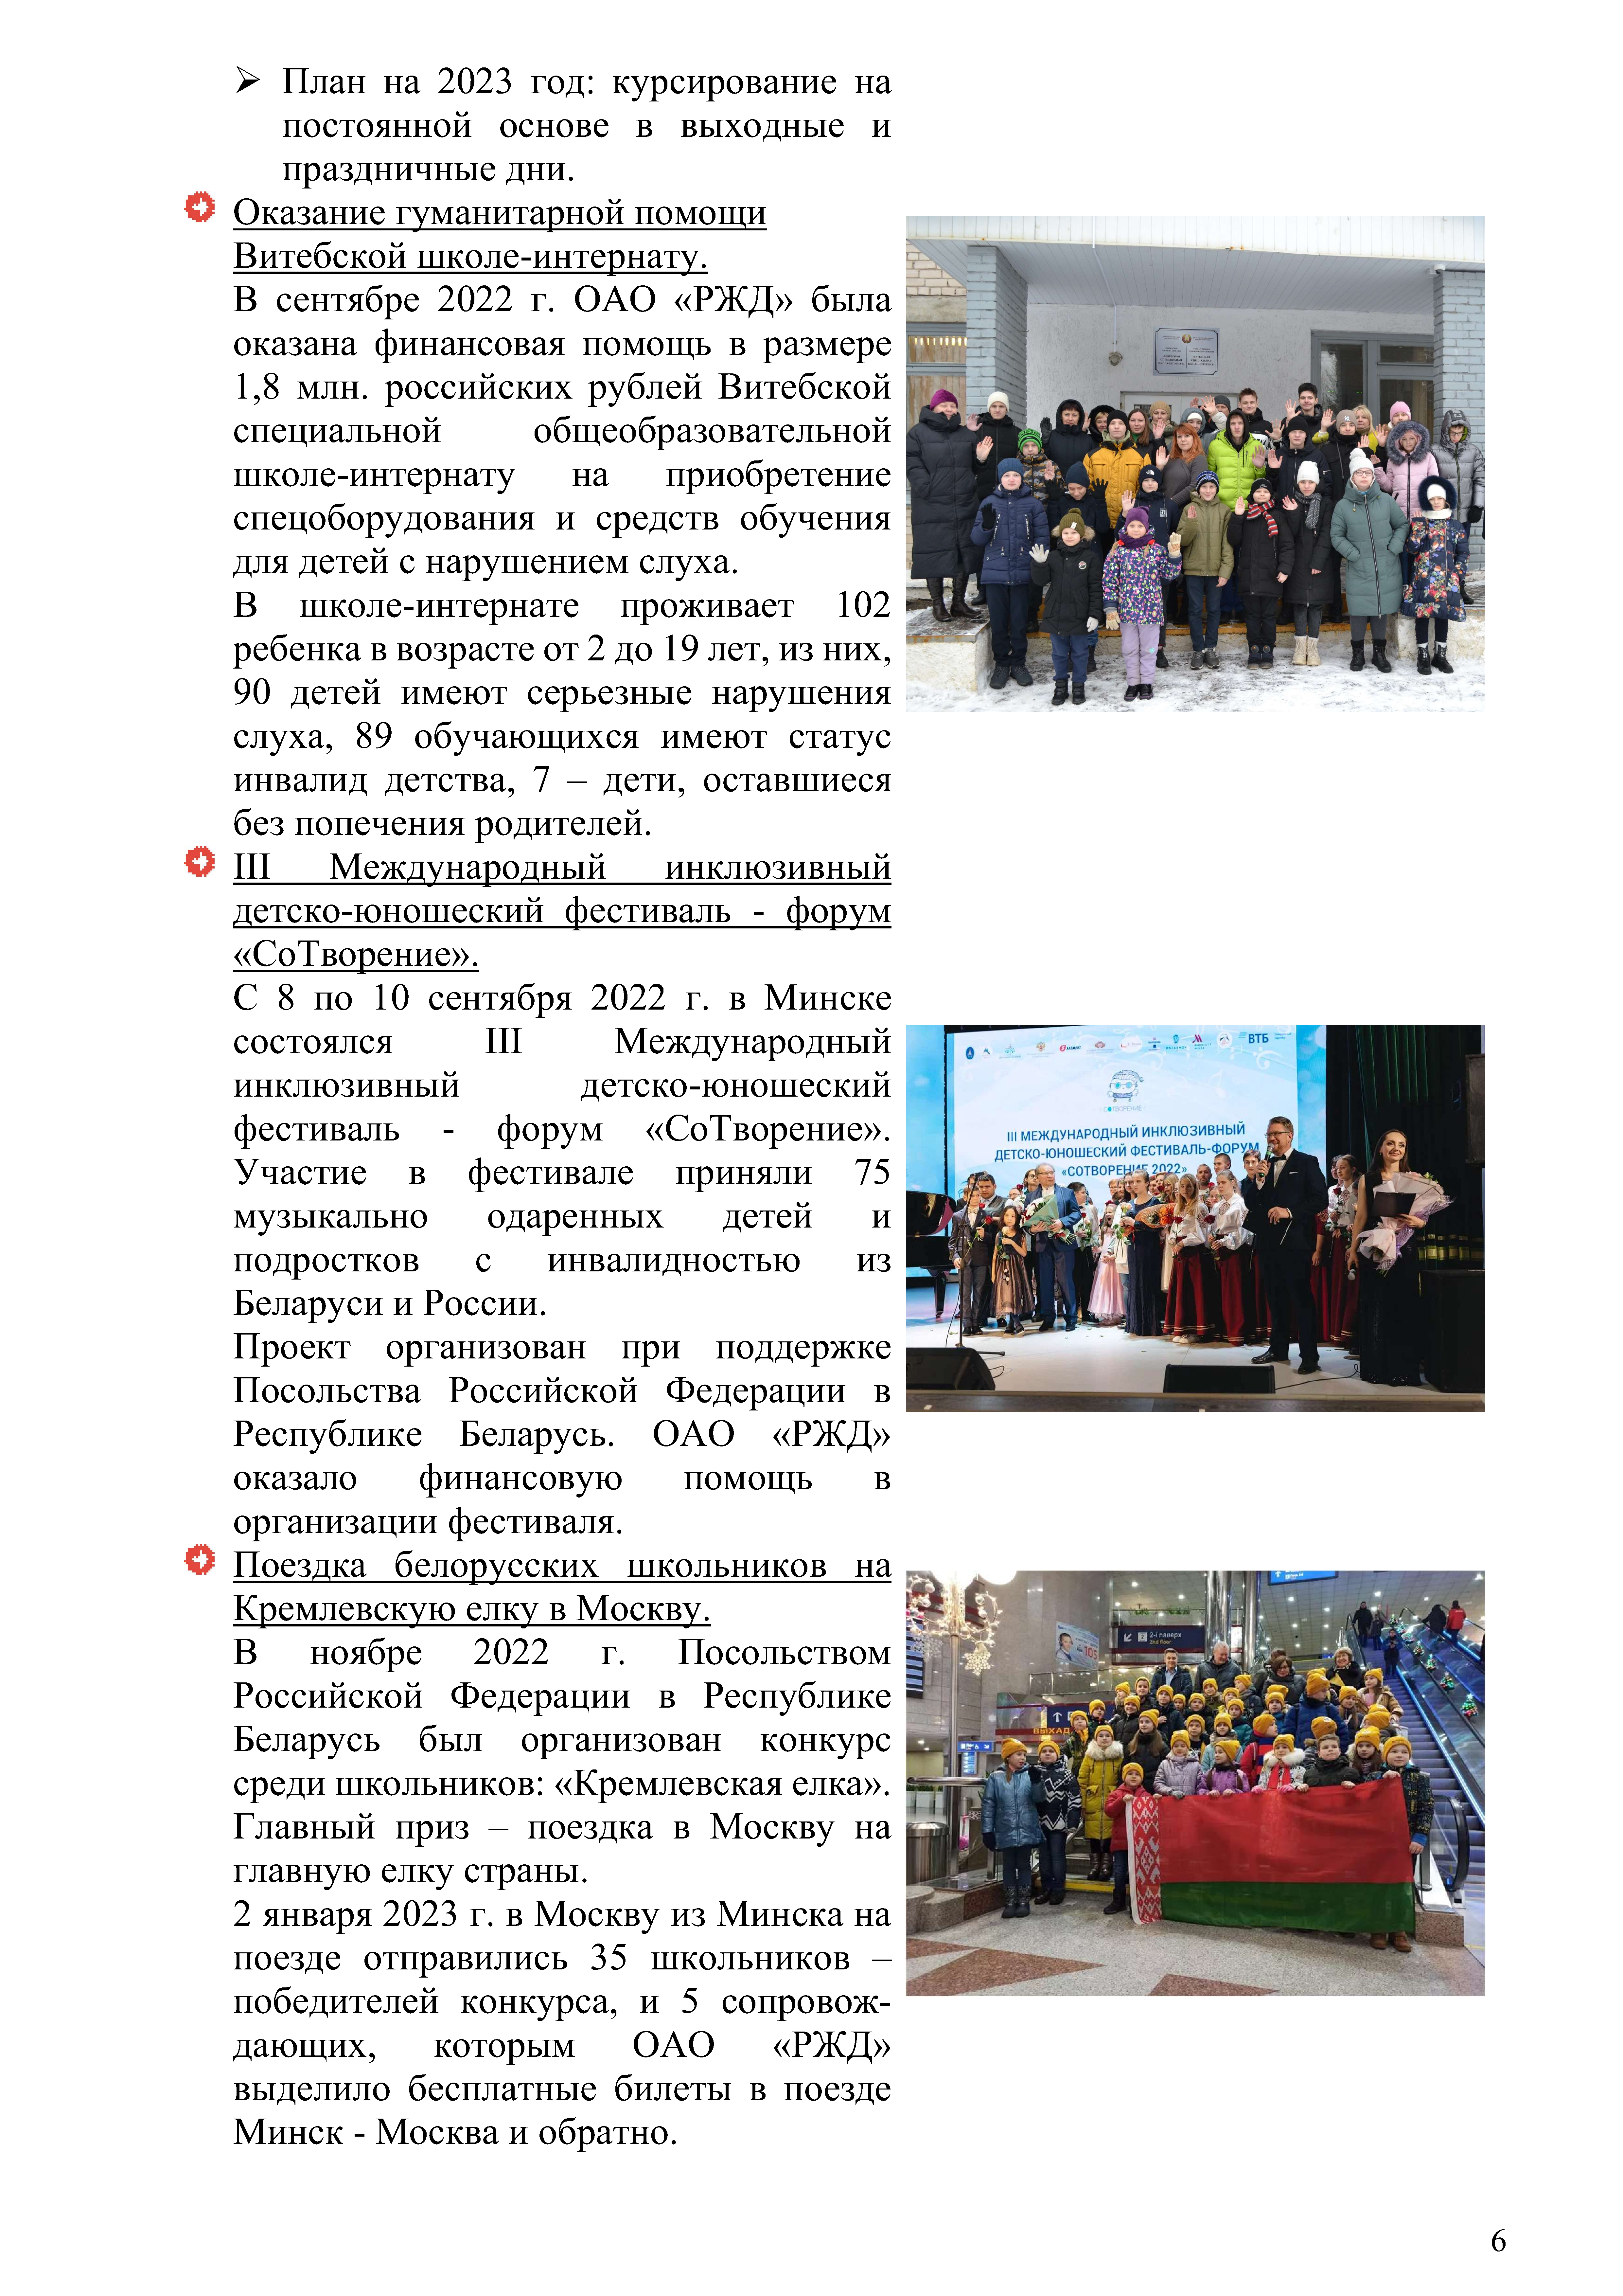 Отчет о работе представительства ОАО «РЖД» в Республике Беларусь за 2022 год (Страница 5)